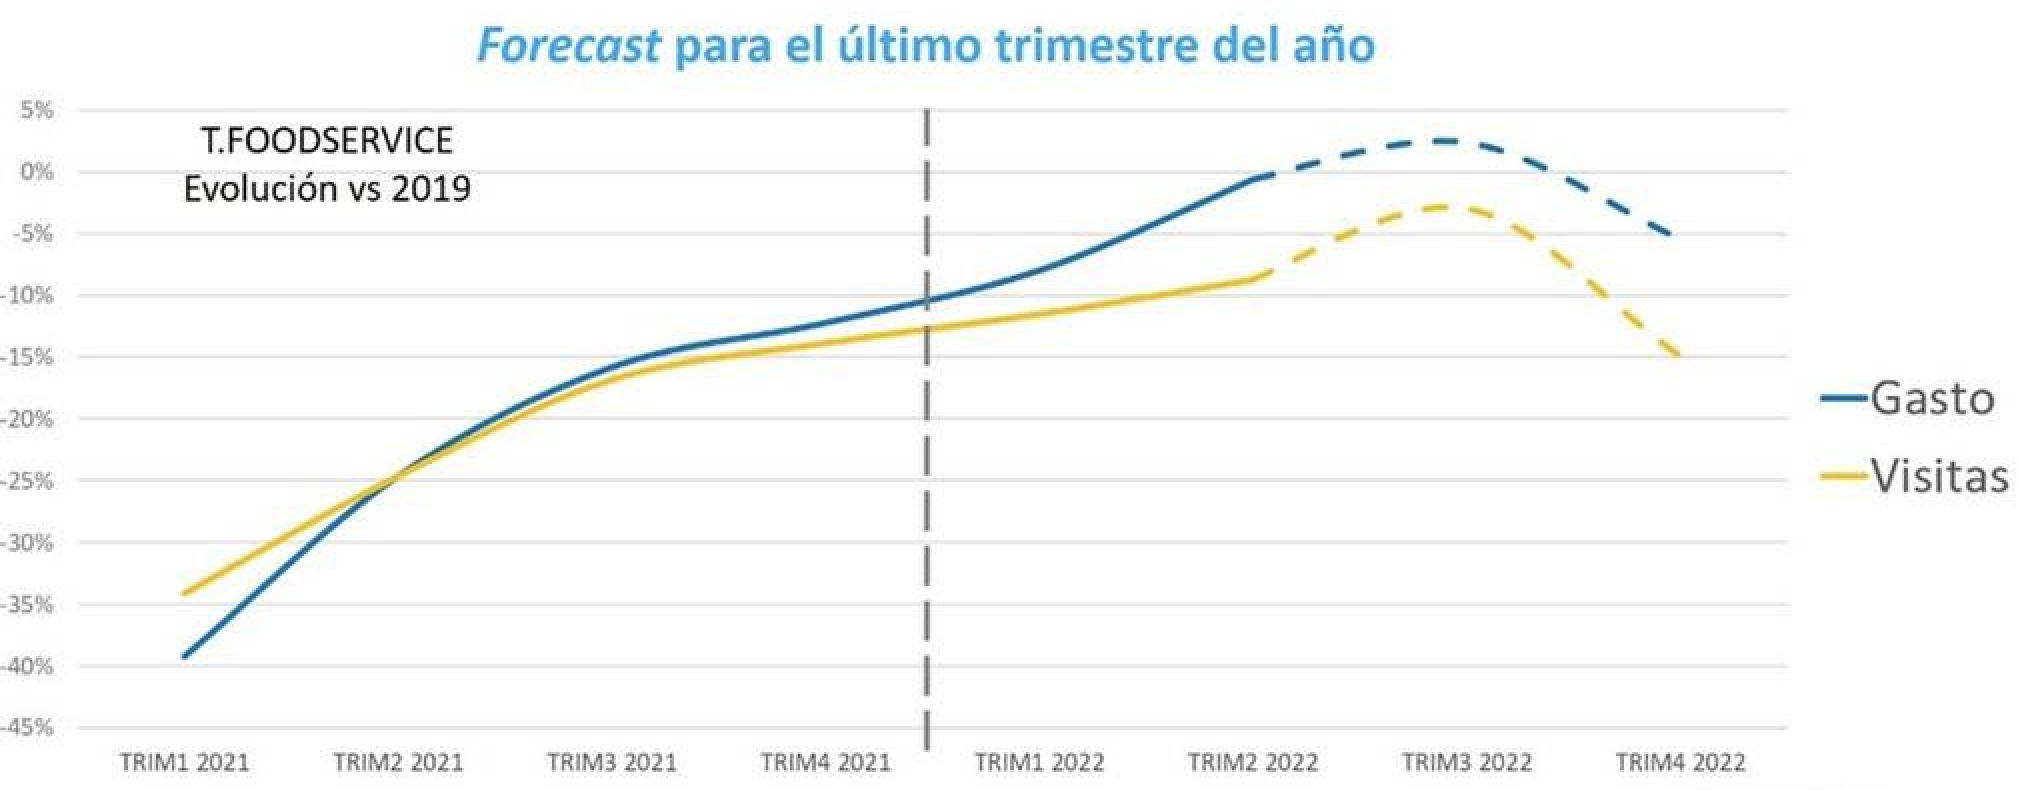 ​El gasto de los españoles en foodservice supera este verano los niveles precovid